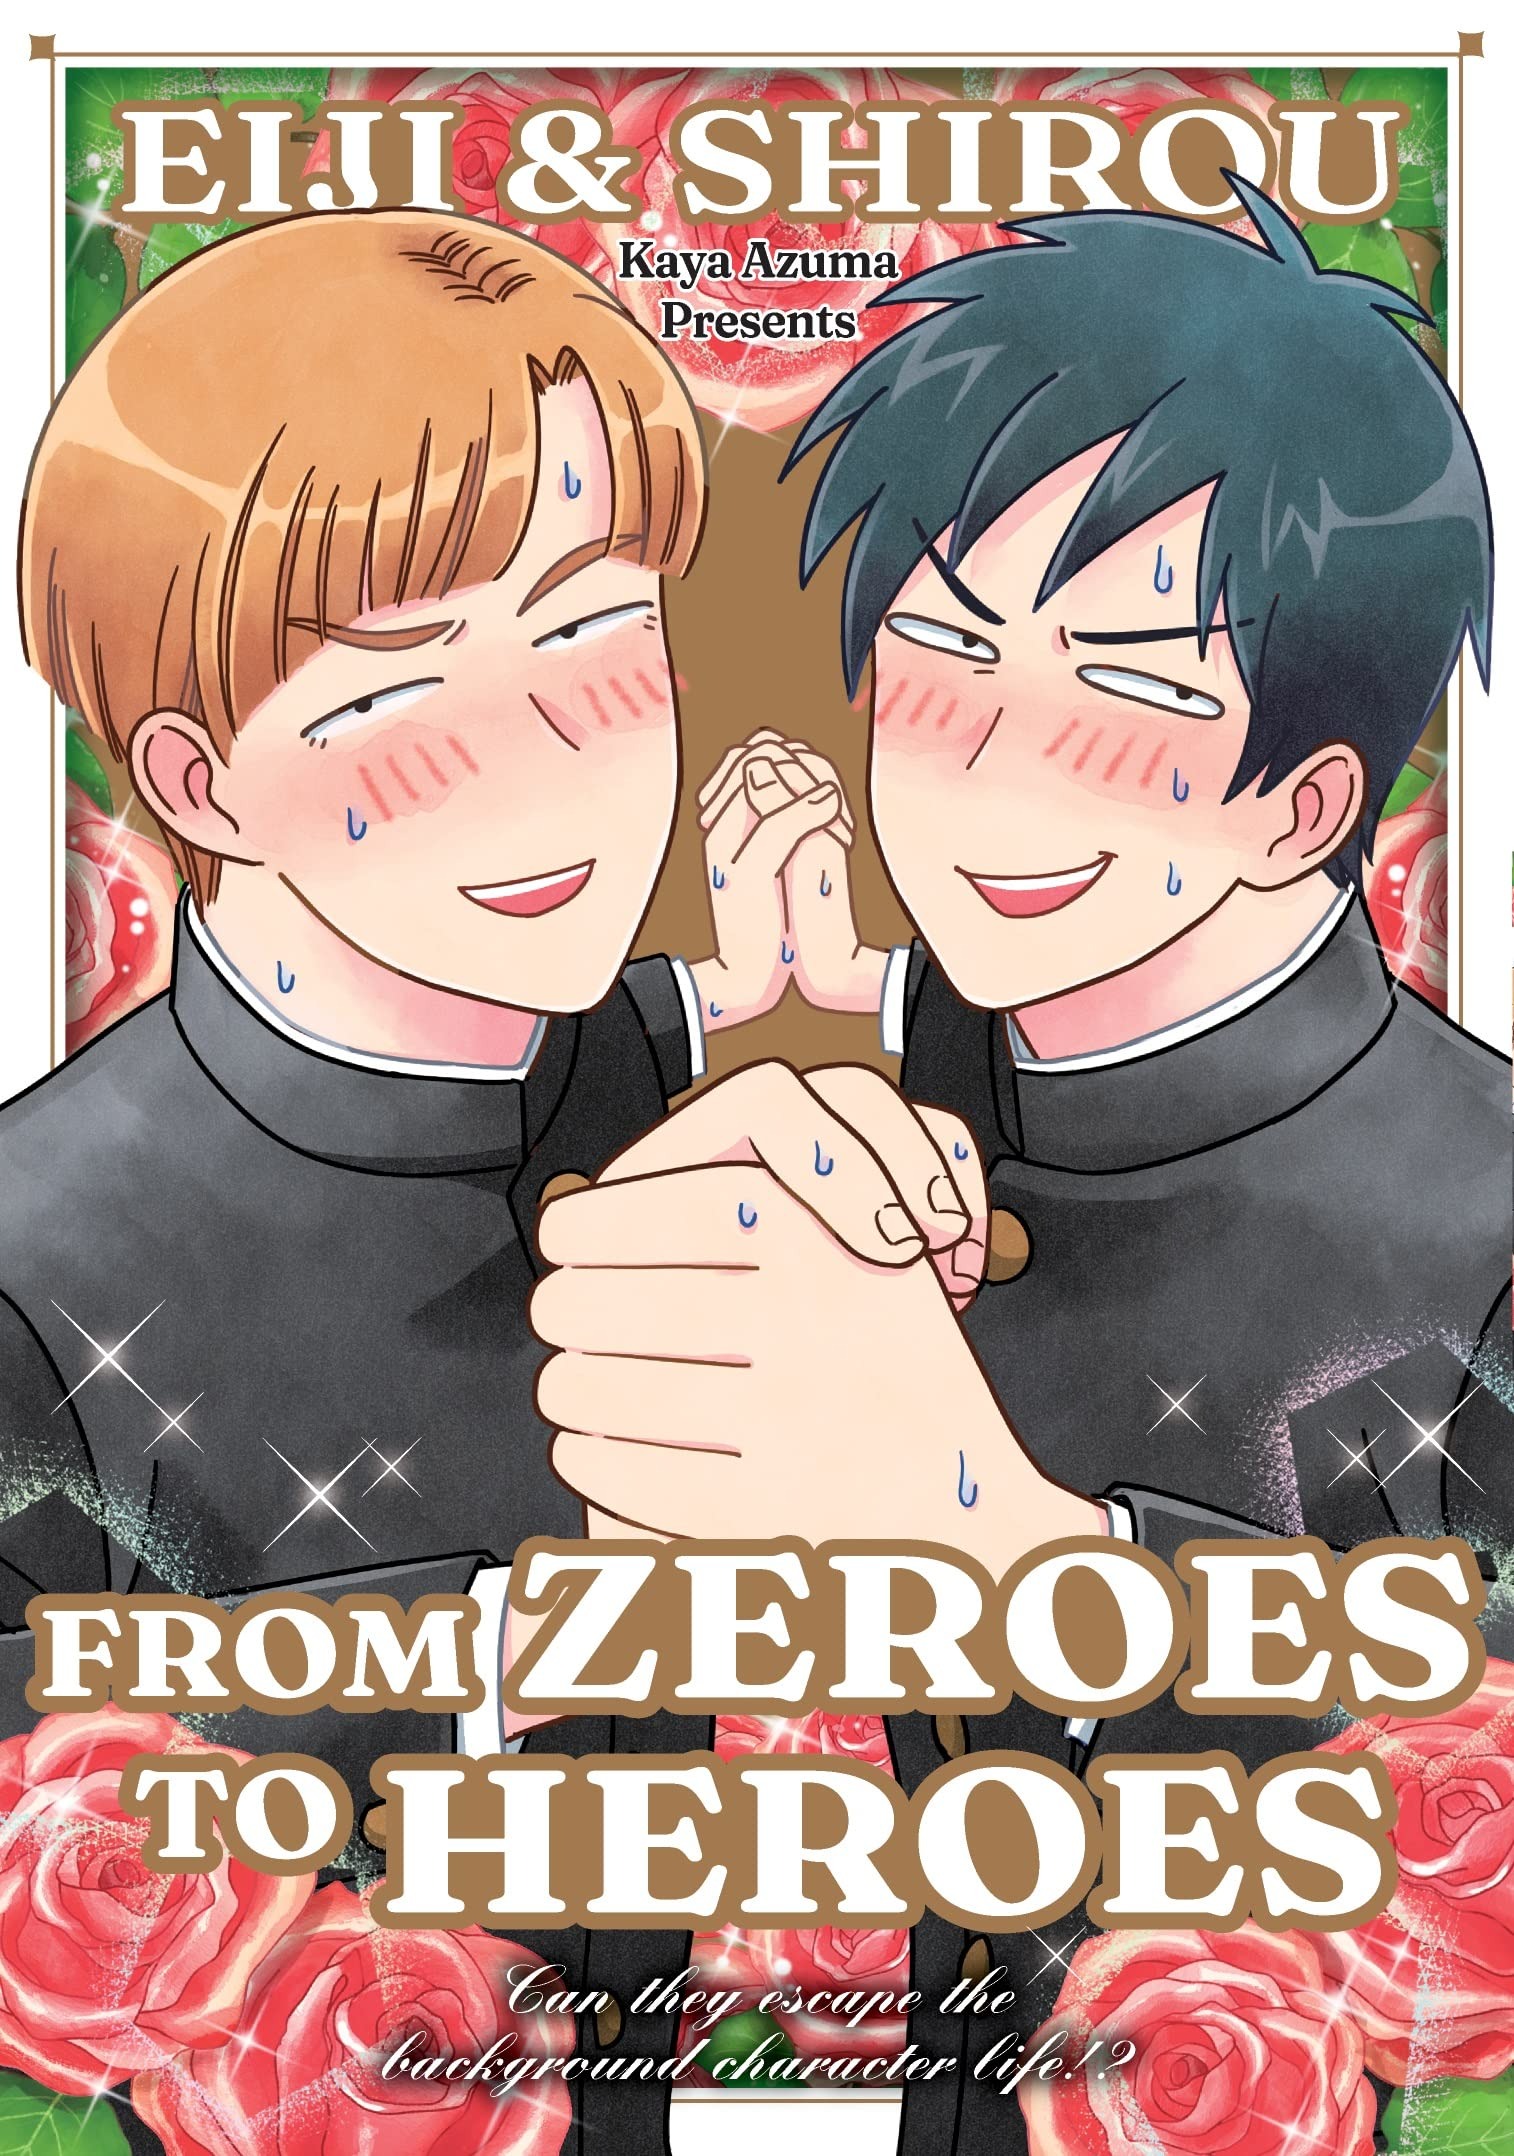 Eiji And Shiro Manga Volume 1 From Zeroes To Heroes (Mature)